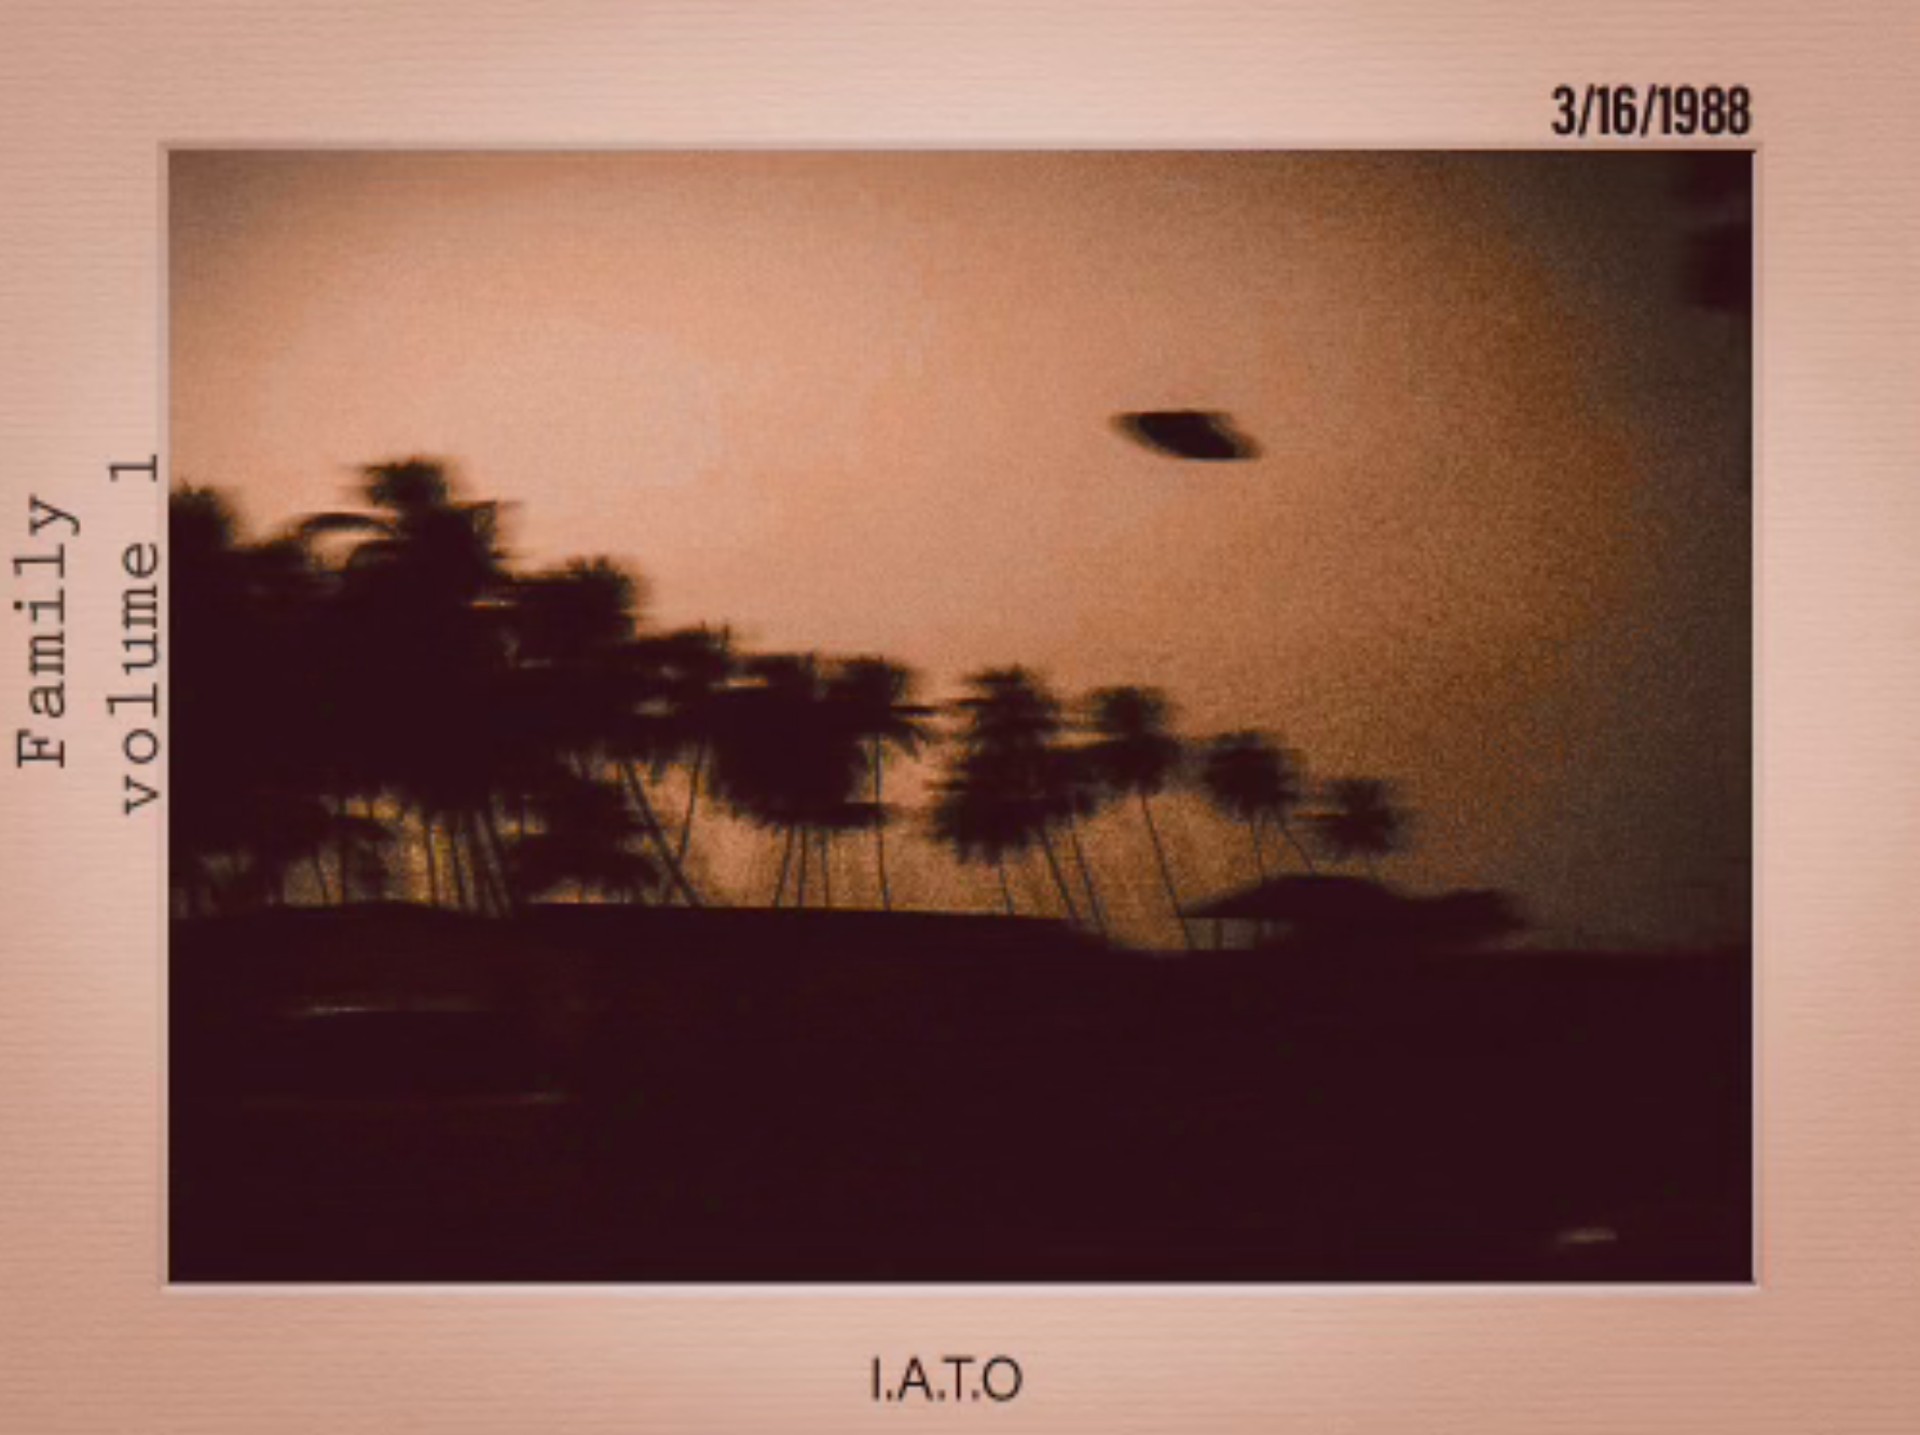 IATO ‘Family, Vol. 1’ album artwork